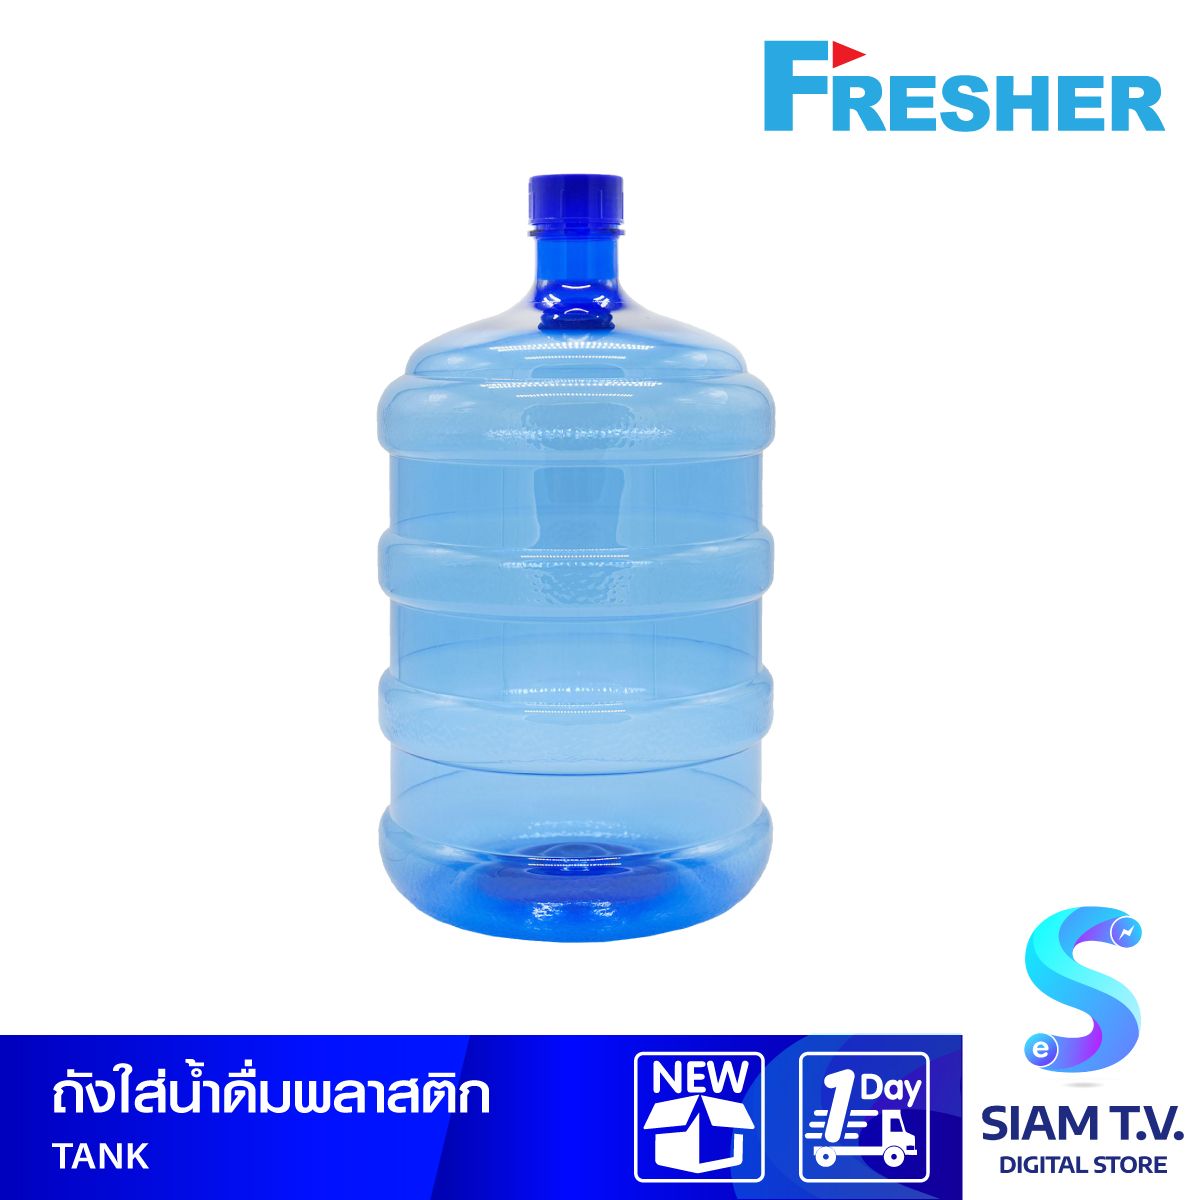 ถังน้ำดื่มทรงกลม FRESHER  รุ่น TANK ขนาด 18.9 ลิตร สีใส